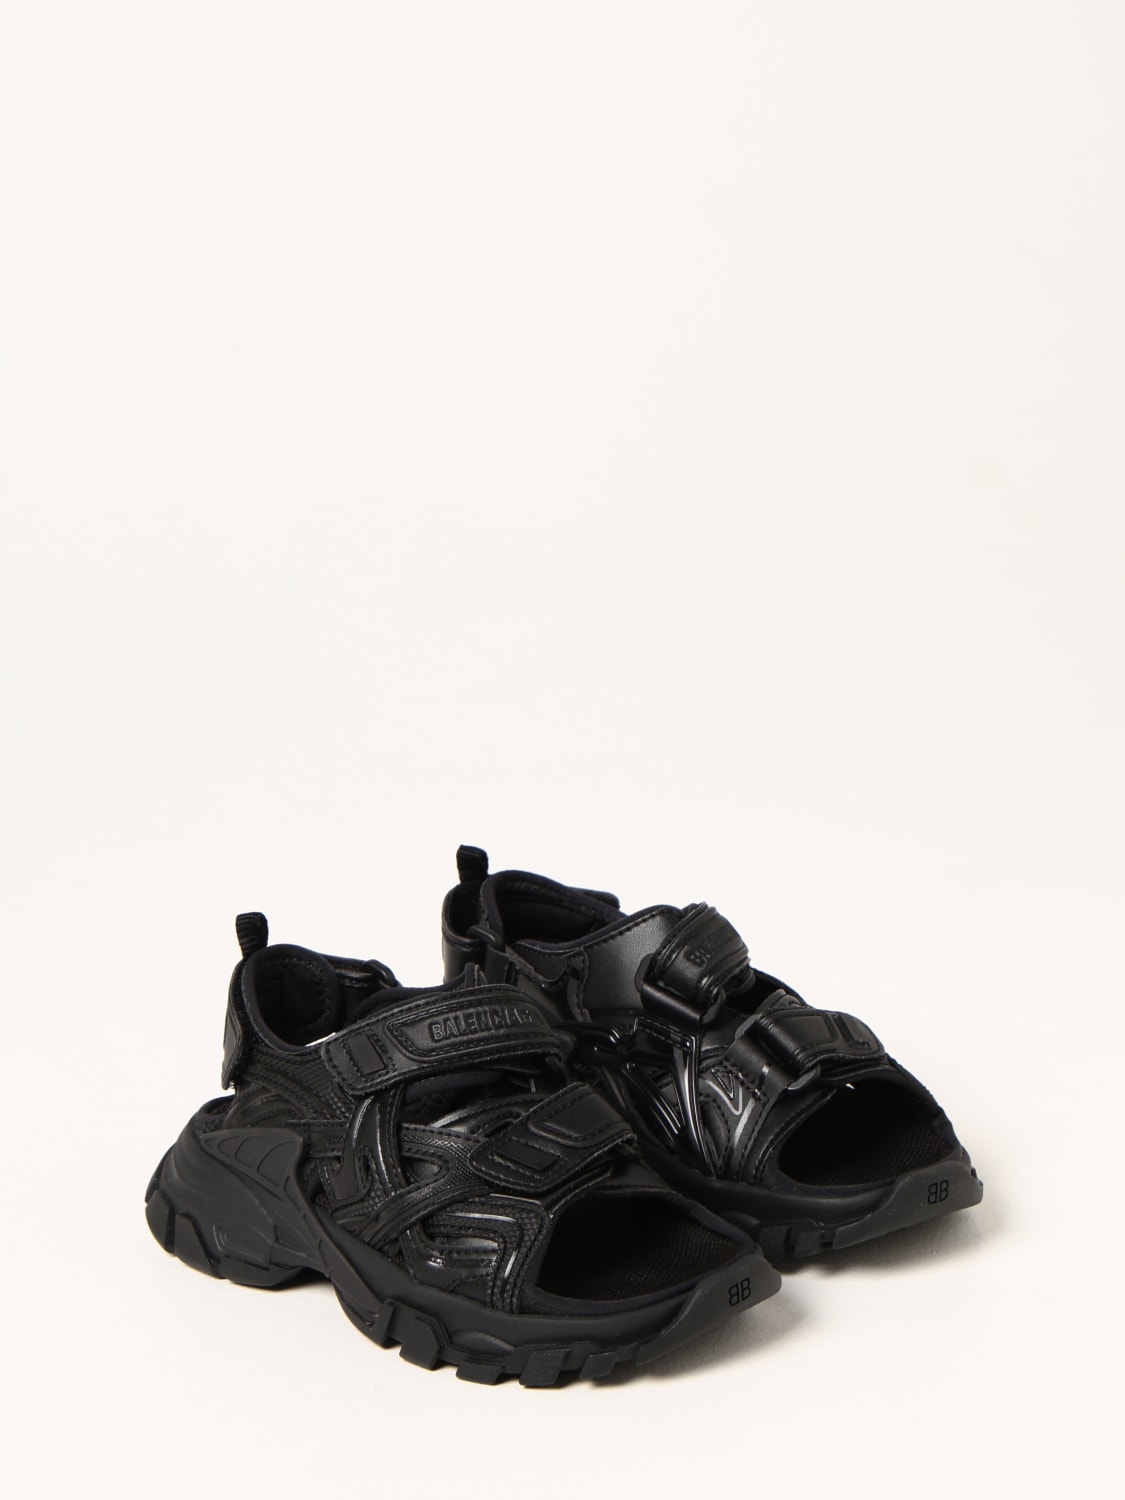 Lav vej Undertrykke Egetræ Balenciaga Outlet: Track sandals - Black | Balenciaga shoes 644999W2CC1  online at GIGLIO.COM